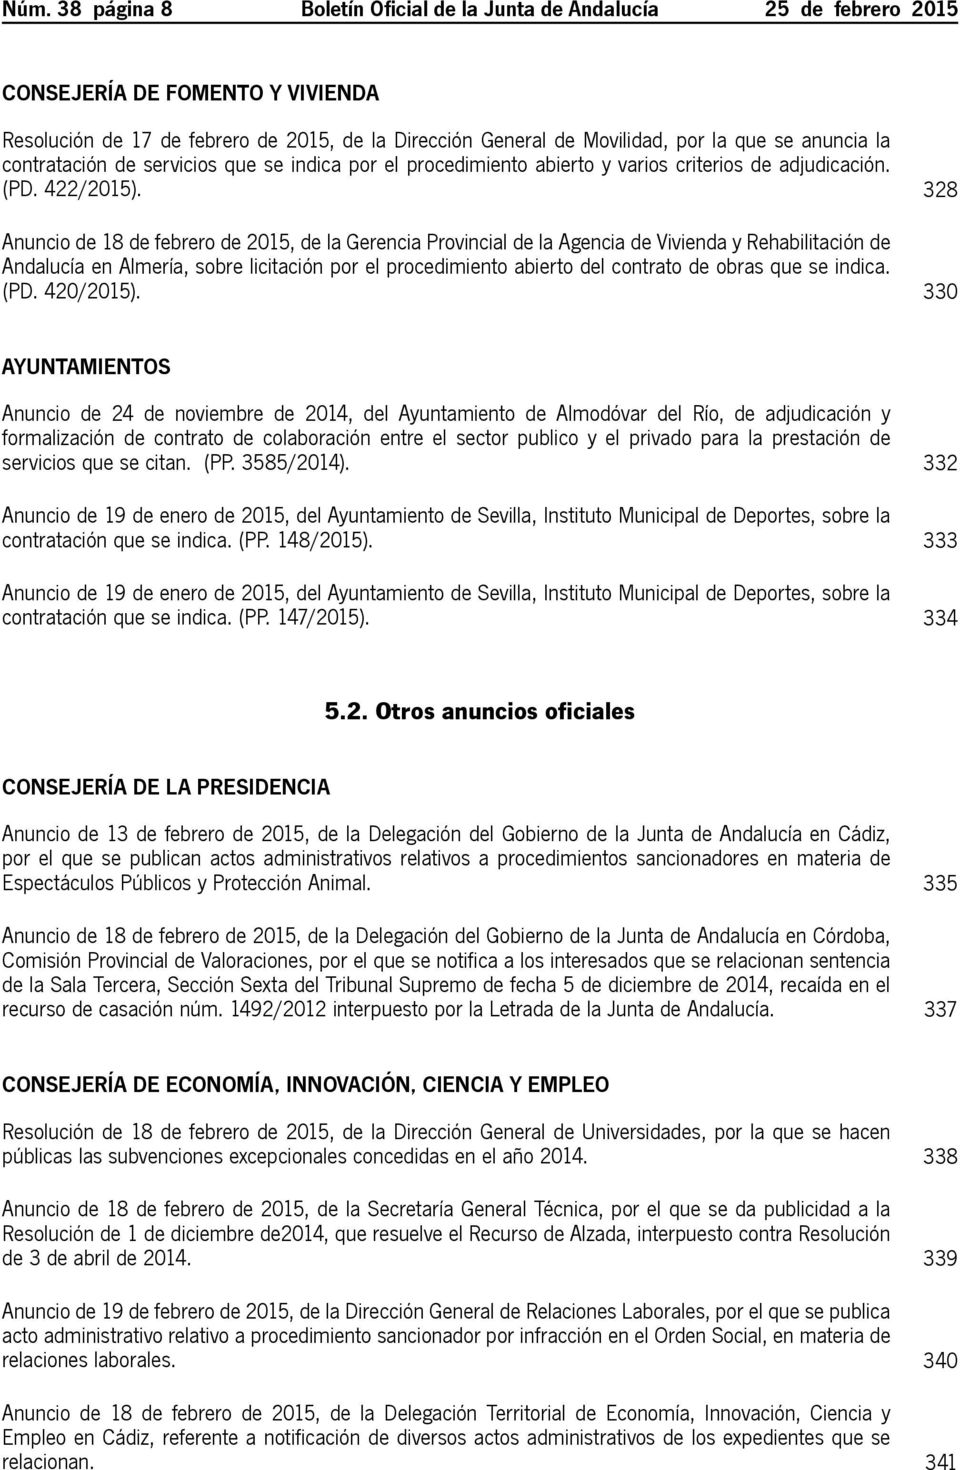 328 Anuncio de 18 de febrero de 2015, de la Gerencia Provincial de la Agencia de Vivienda y Rehabilitación de Andalucía en Almería, sobre licitación por el procedimiento abierto del contrato de obras